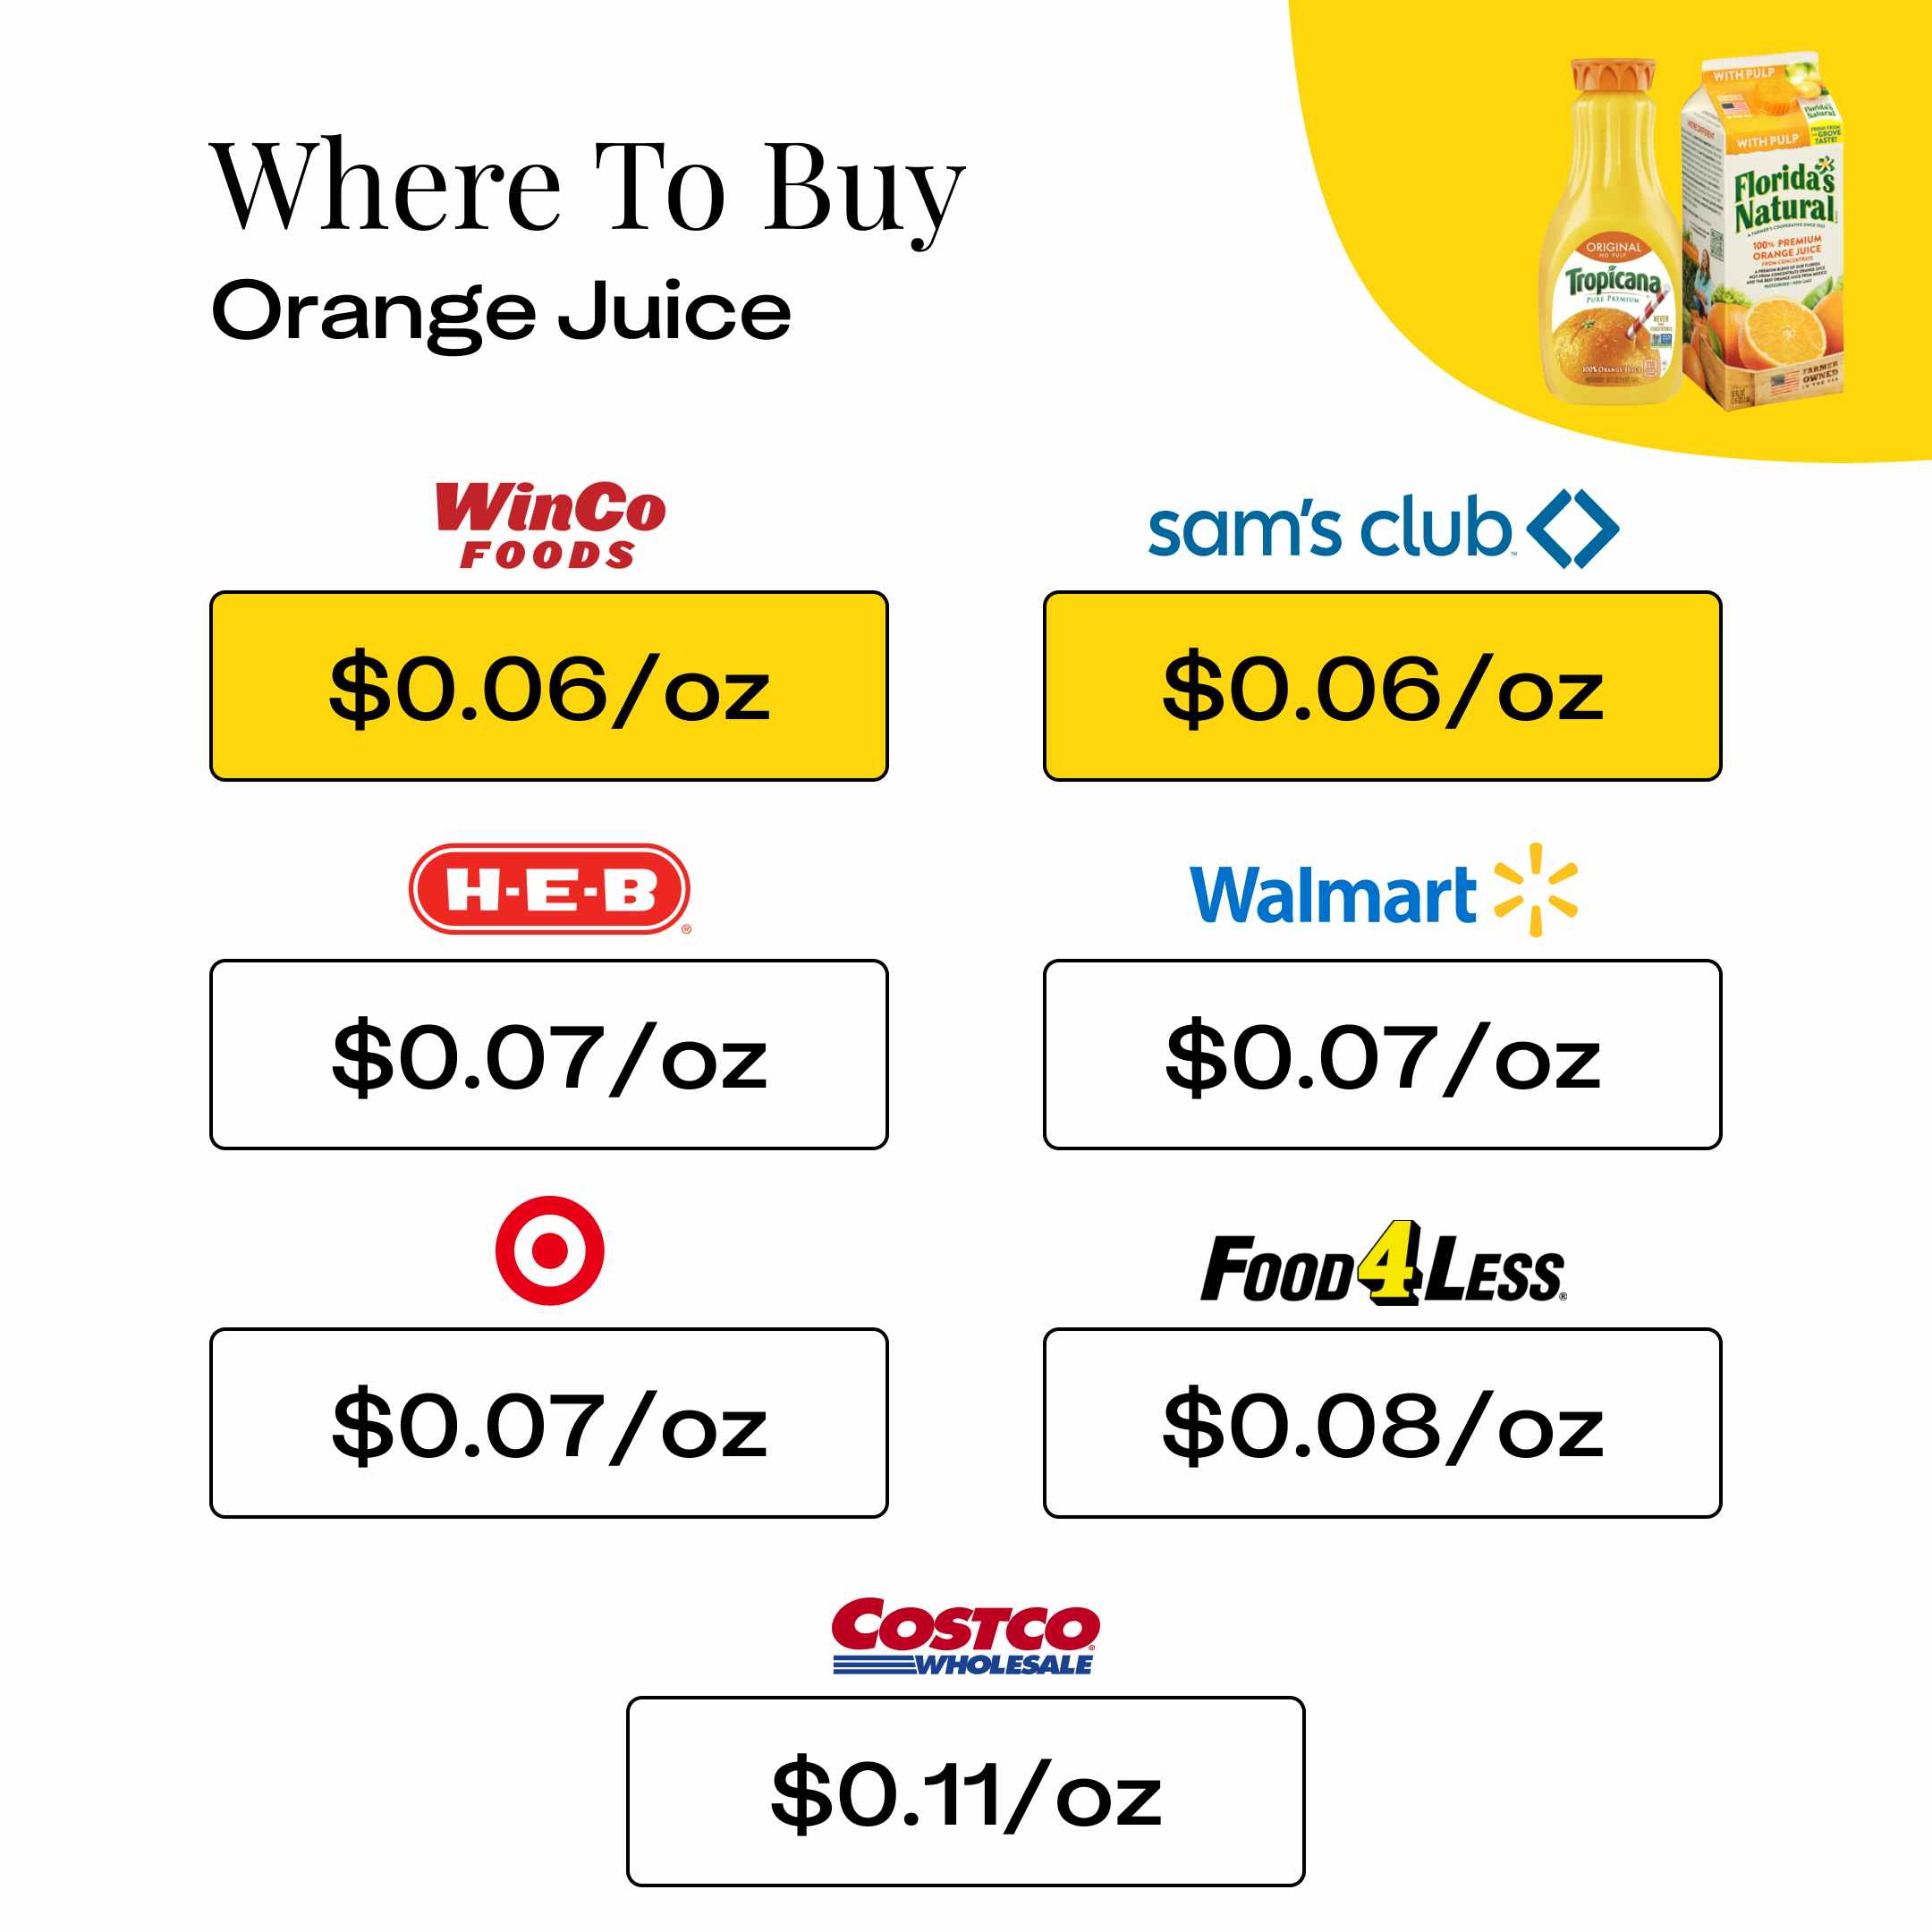 Where To Buy Orange Juice